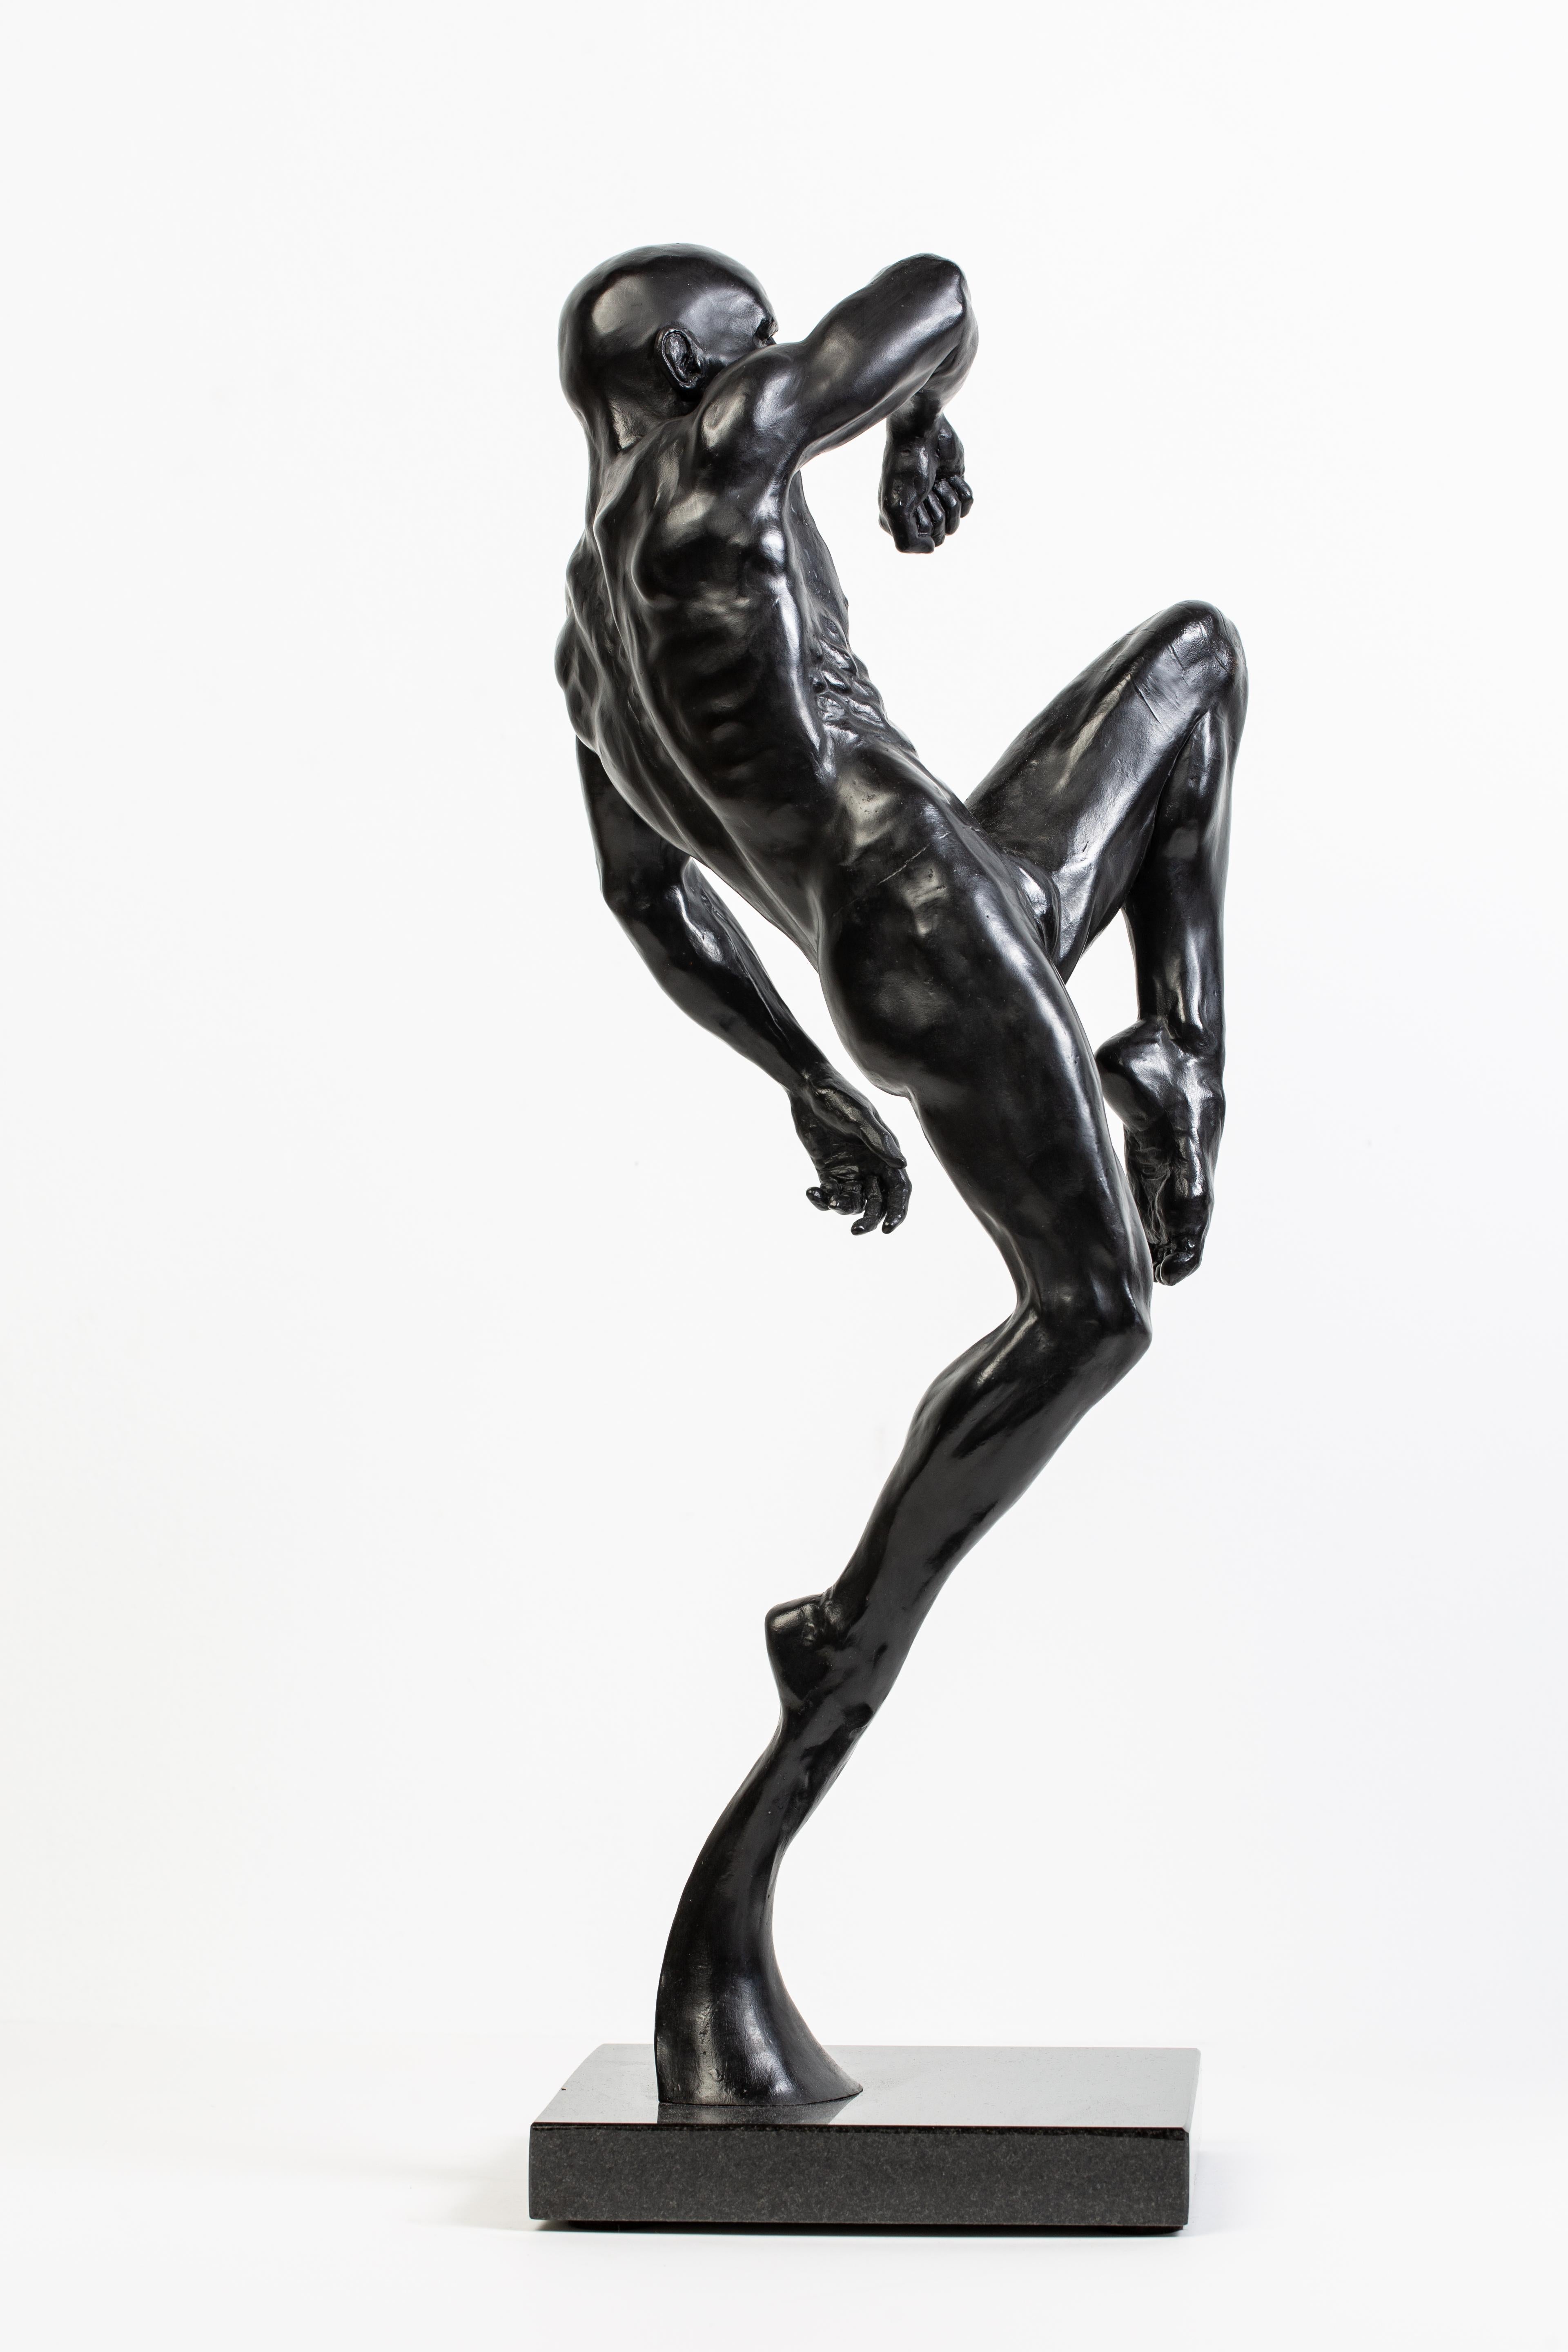 This Impact - Sculpture contemporaine en bronze d'un homme nu en position d'action - Or Nude Sculpture par Dean Kugler